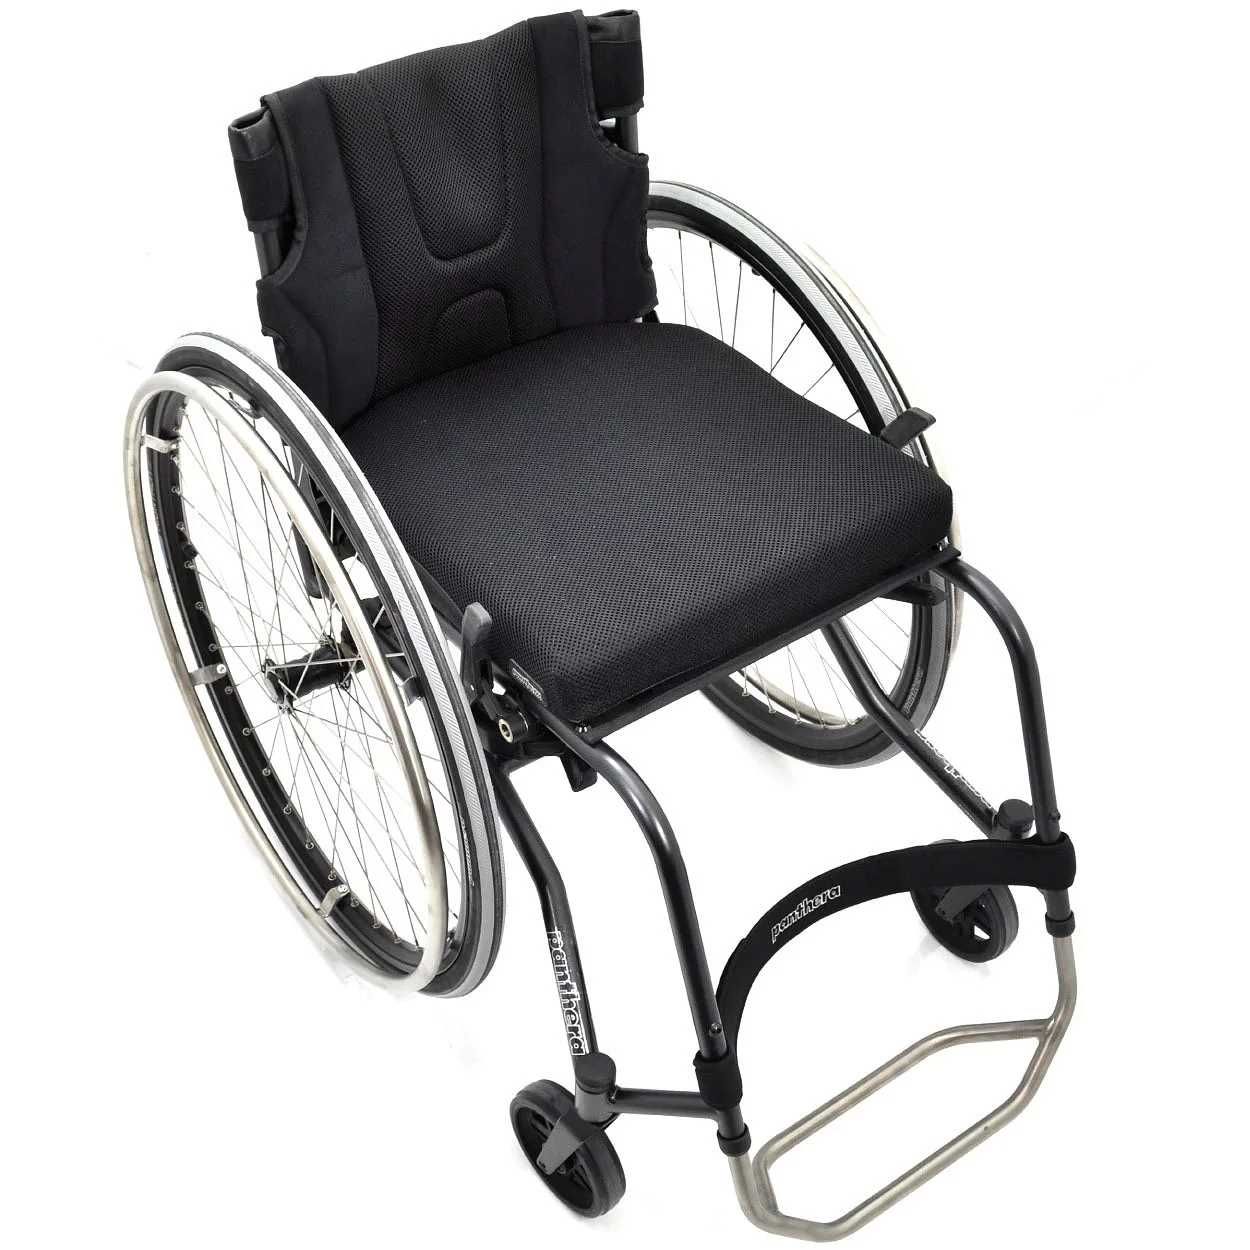 Wózek inwalidzki aktywny PANTHERA S3 do uprawiania sportu, NFZ, PCPR.